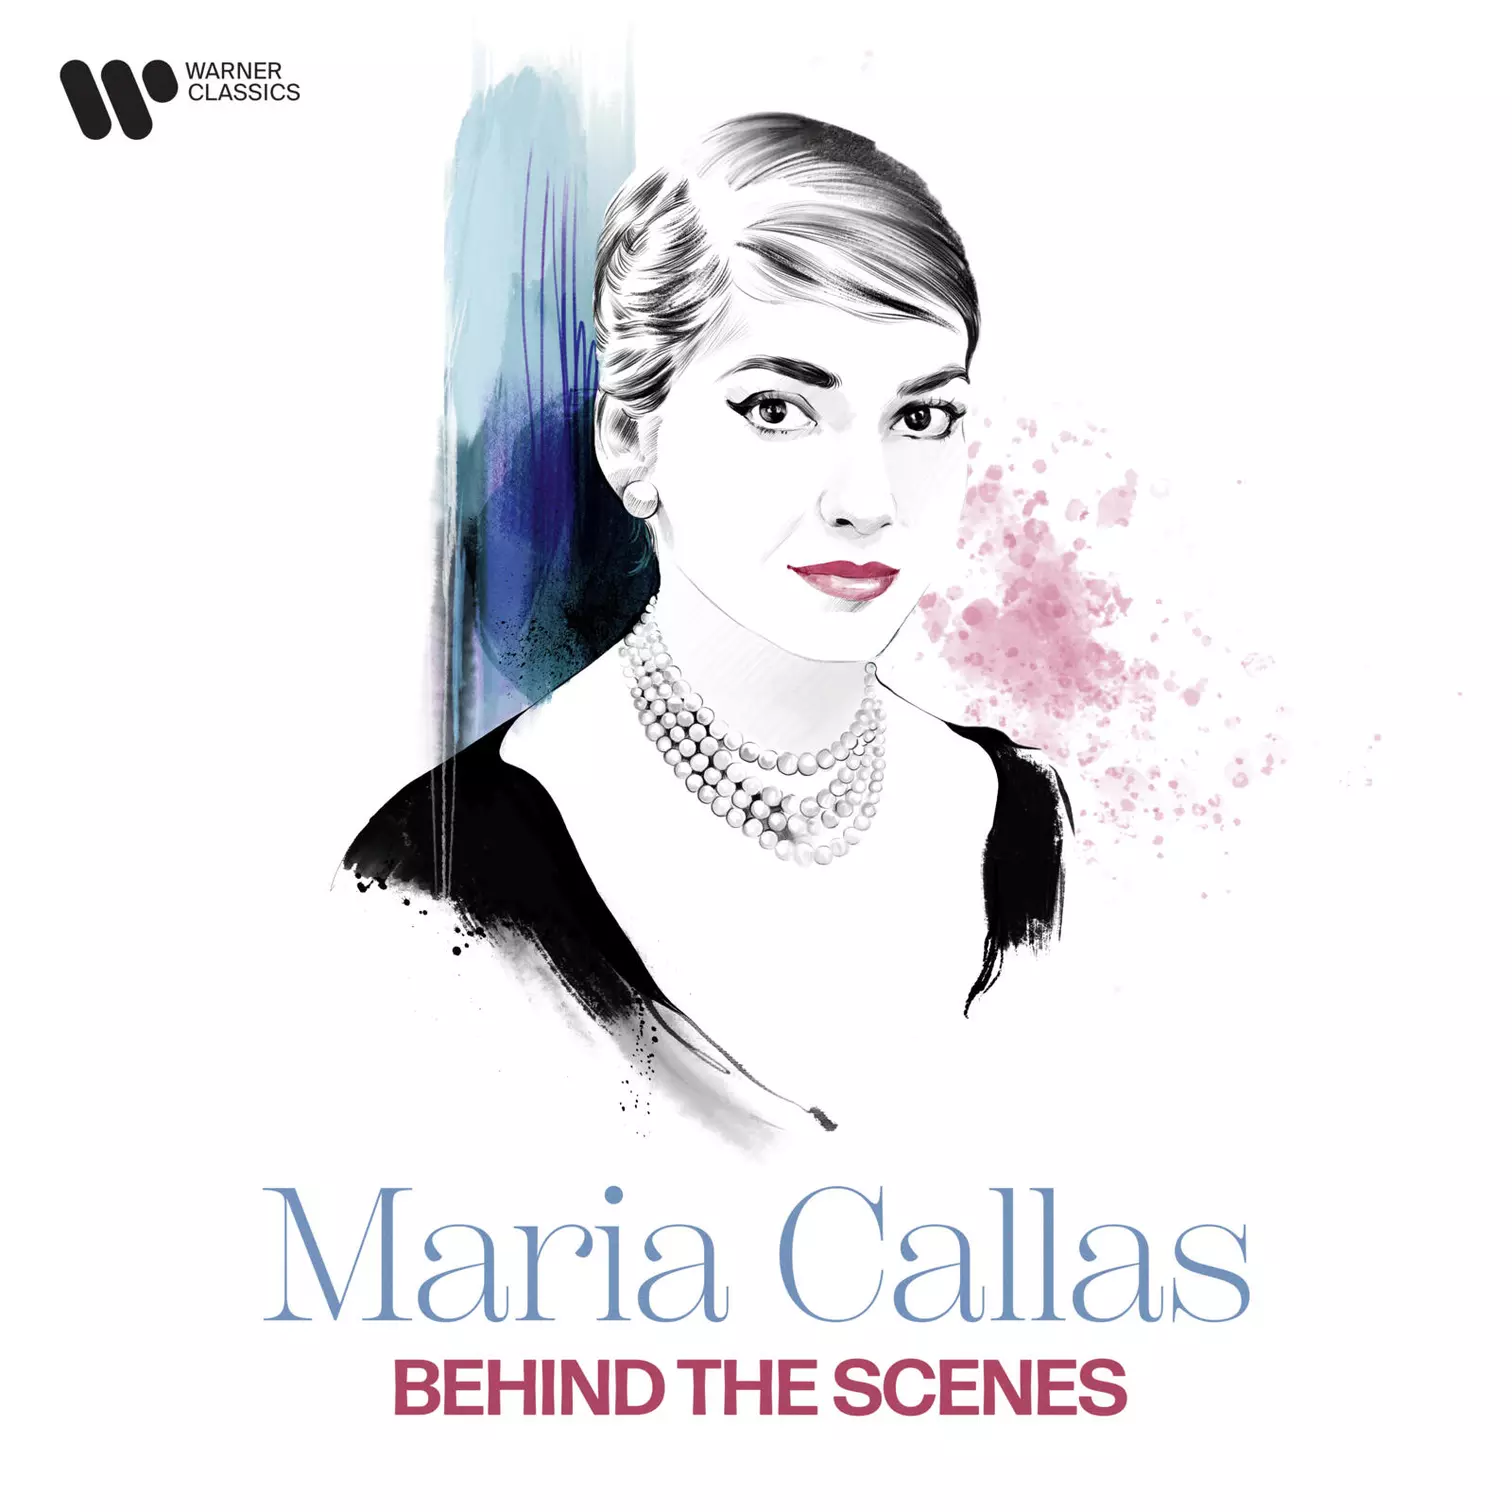 Callas Behind the Scenes